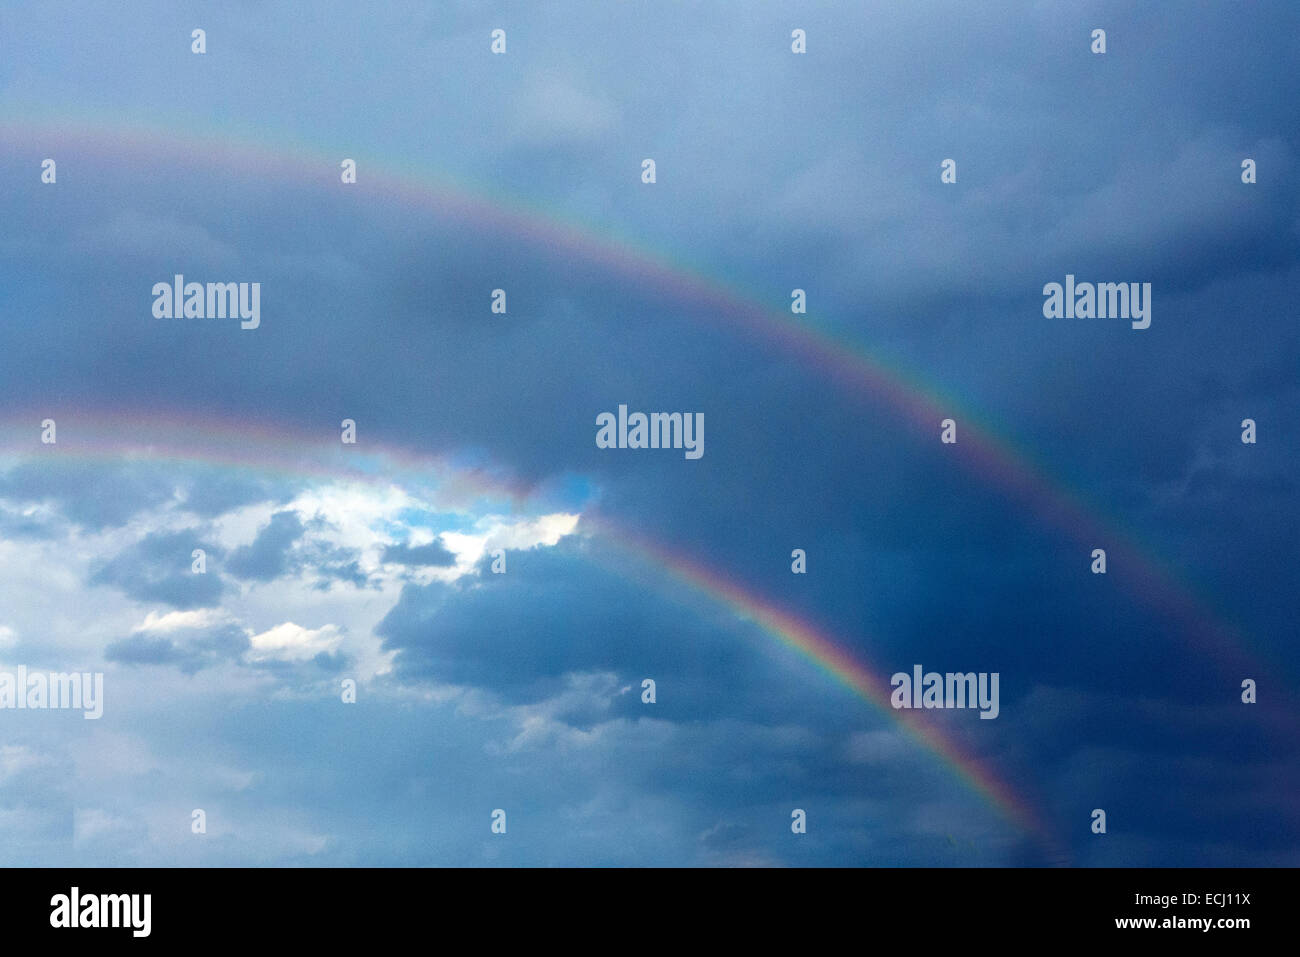 Double rainbow. Stock Photo